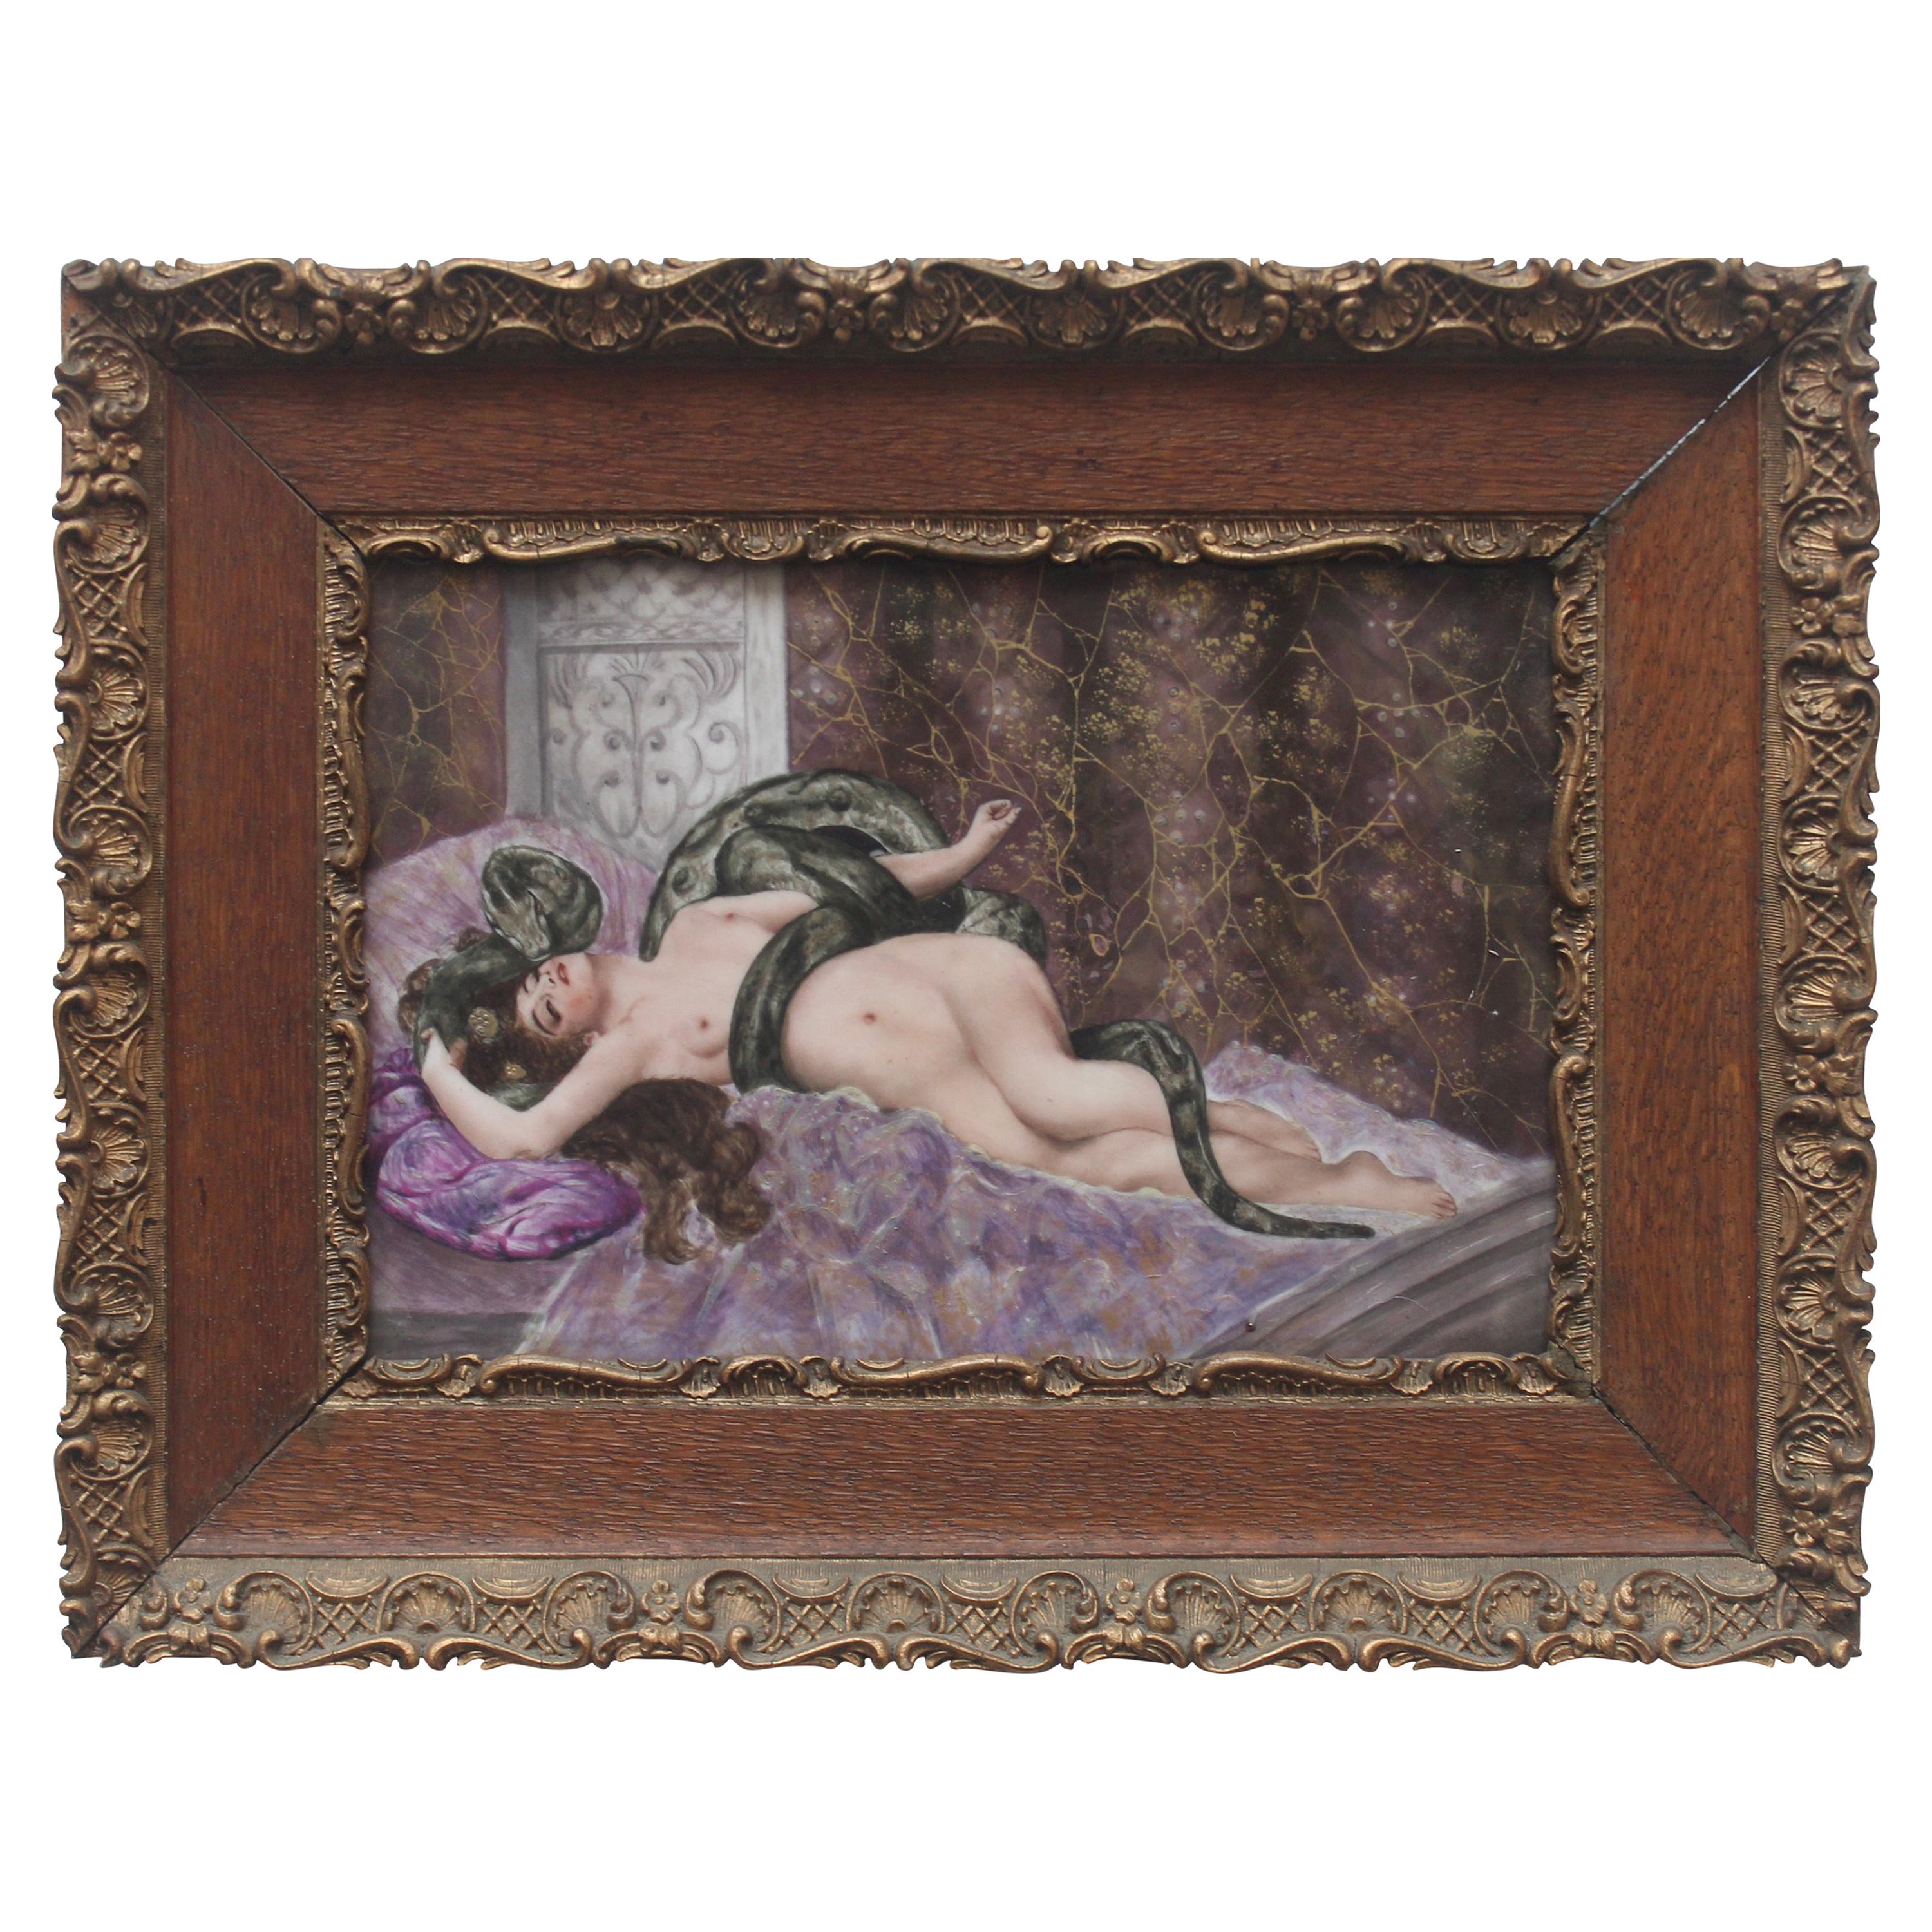 Art Nouveau Symbolist Hand Painted Porcelain Plaque "Eve and the Snake"